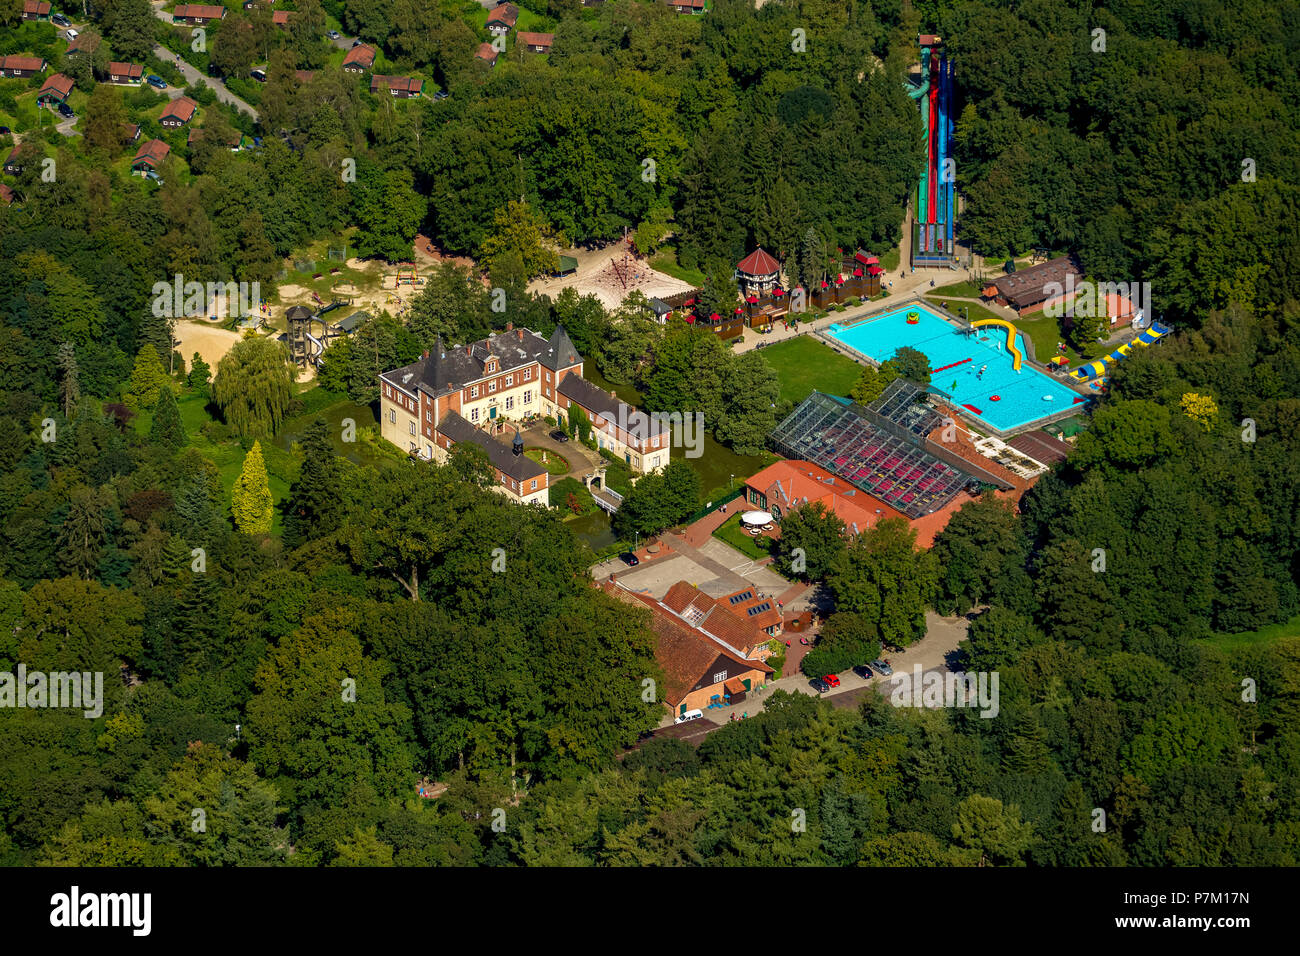 Luftbild, Schloss Dankern Ferienzentrum mit Kabel-Skikurs, Kartbahnen, Surf- und Tauchschule, Haren (Ems), Emsland, Niedersachsen, Deutschland Stockfoto